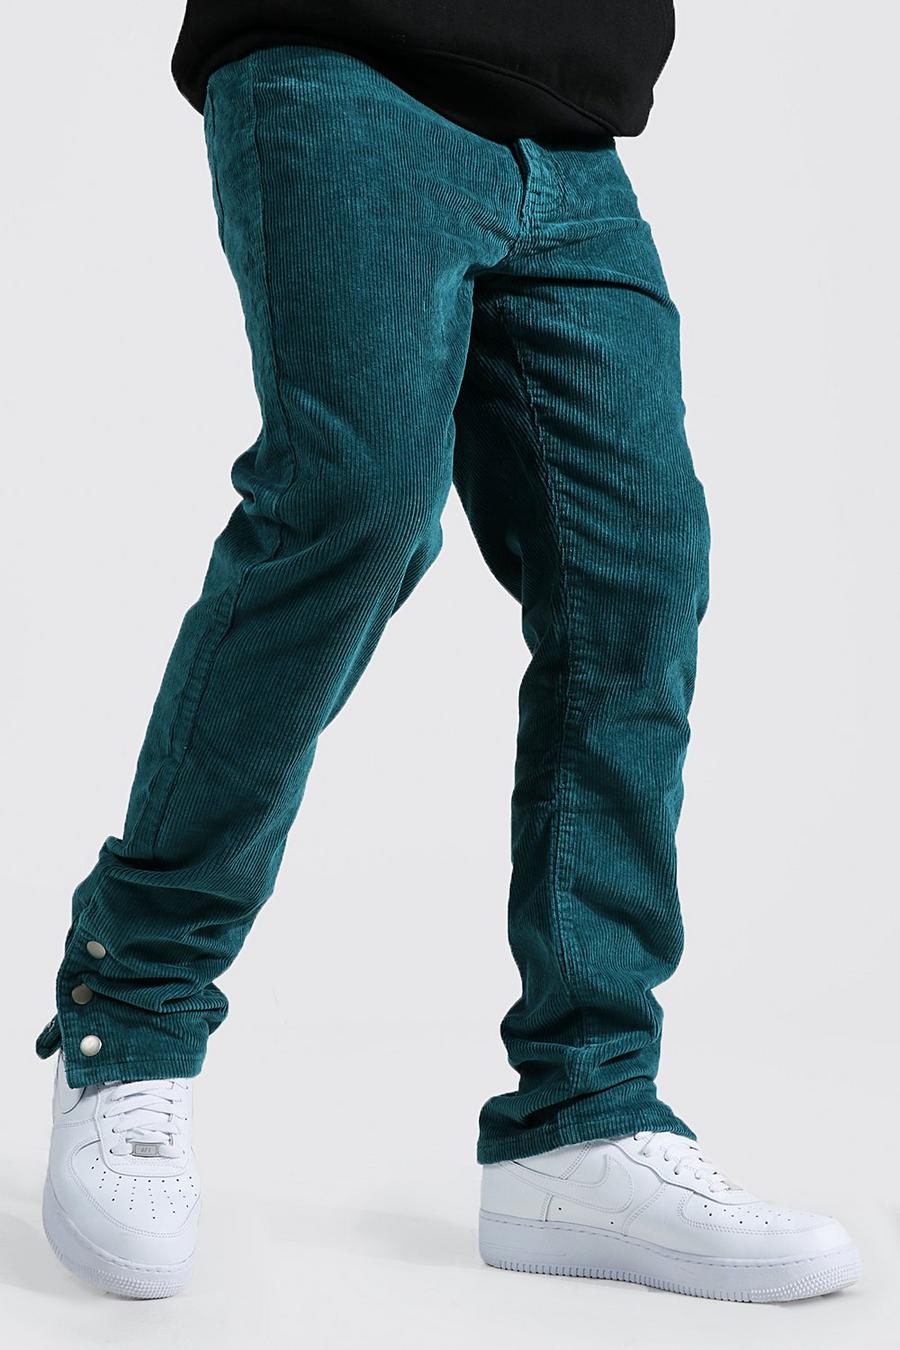 Pantalon droit côtelé avec bouton-pression aux chevilles, Teal grün image number 1